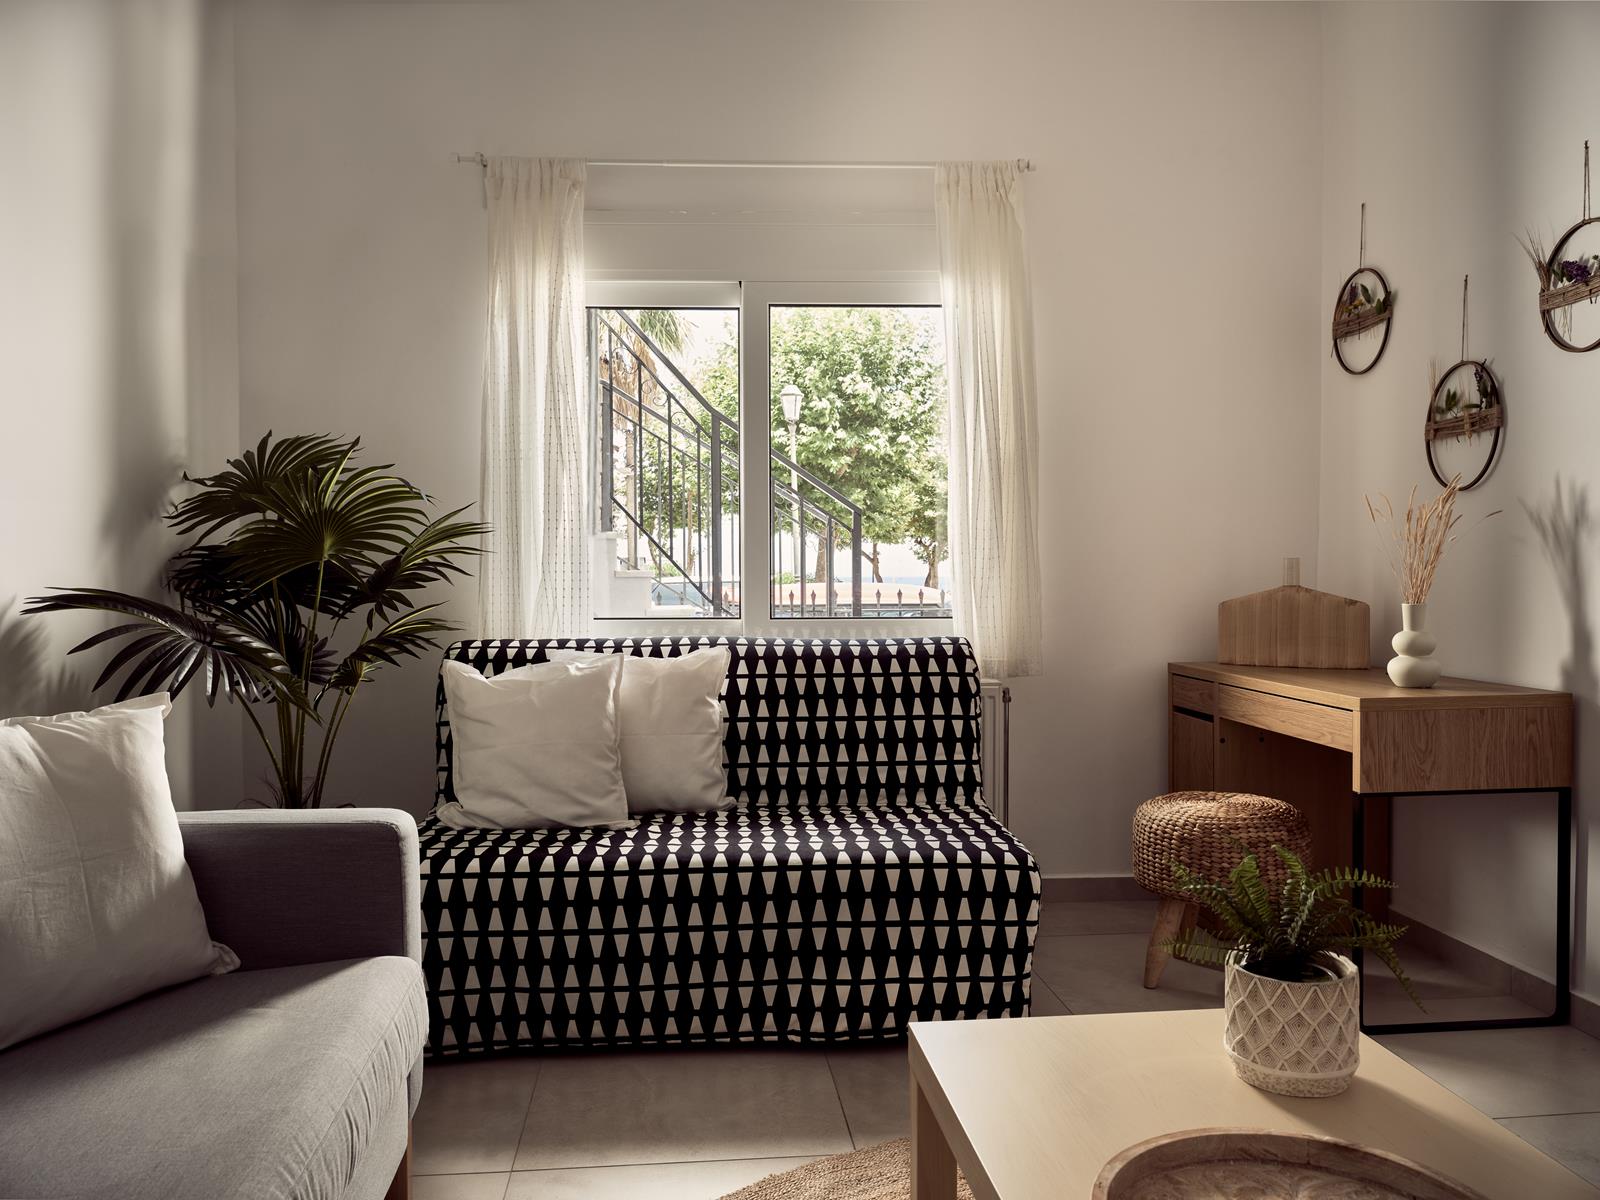 Zakynthos Hotel | Margie Zante Villas & Apartments | Zakynthos